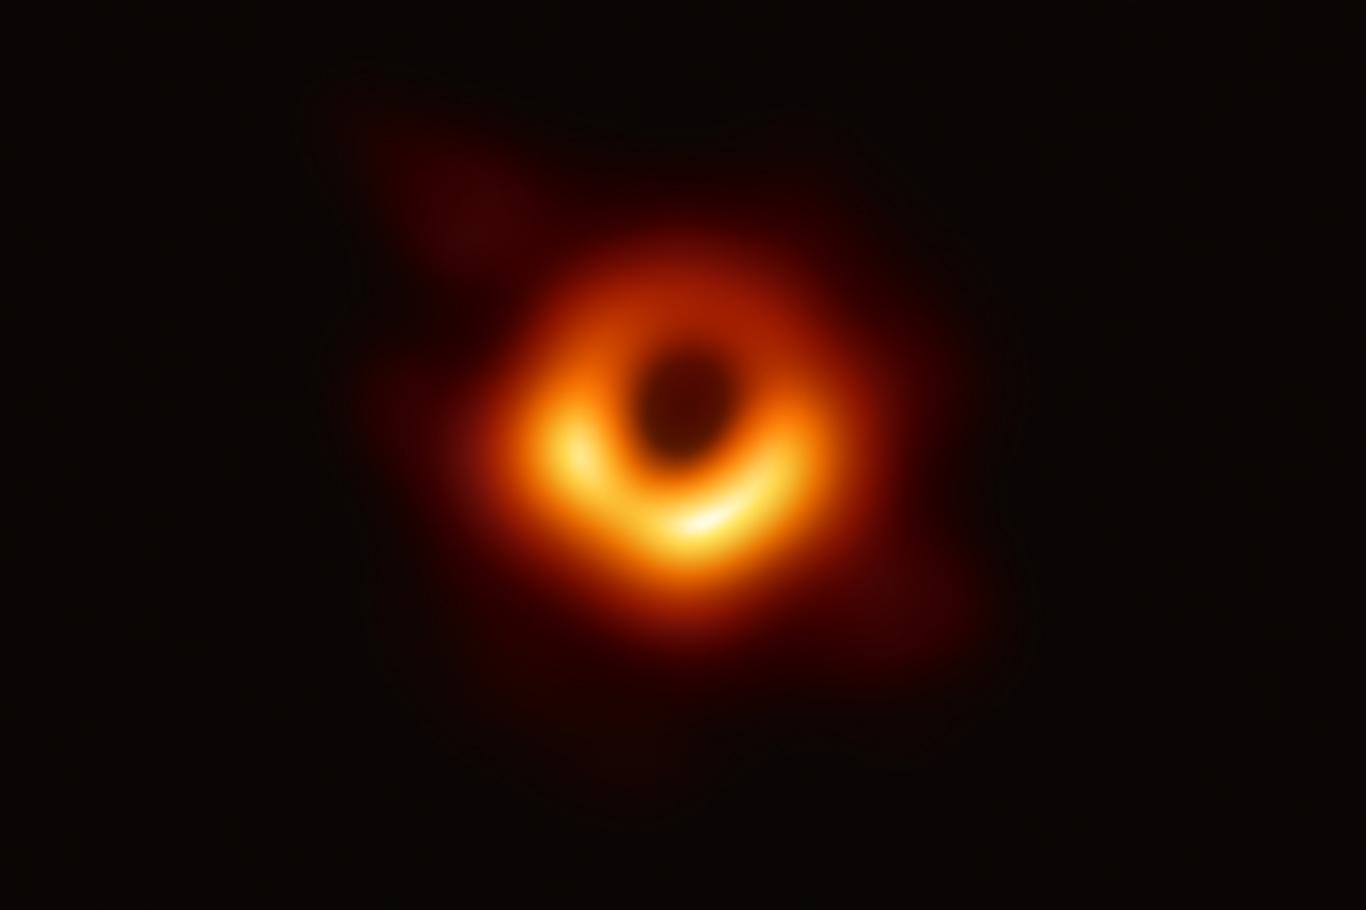 İlk kez "kara deliğe" ait görüntü elde edildi